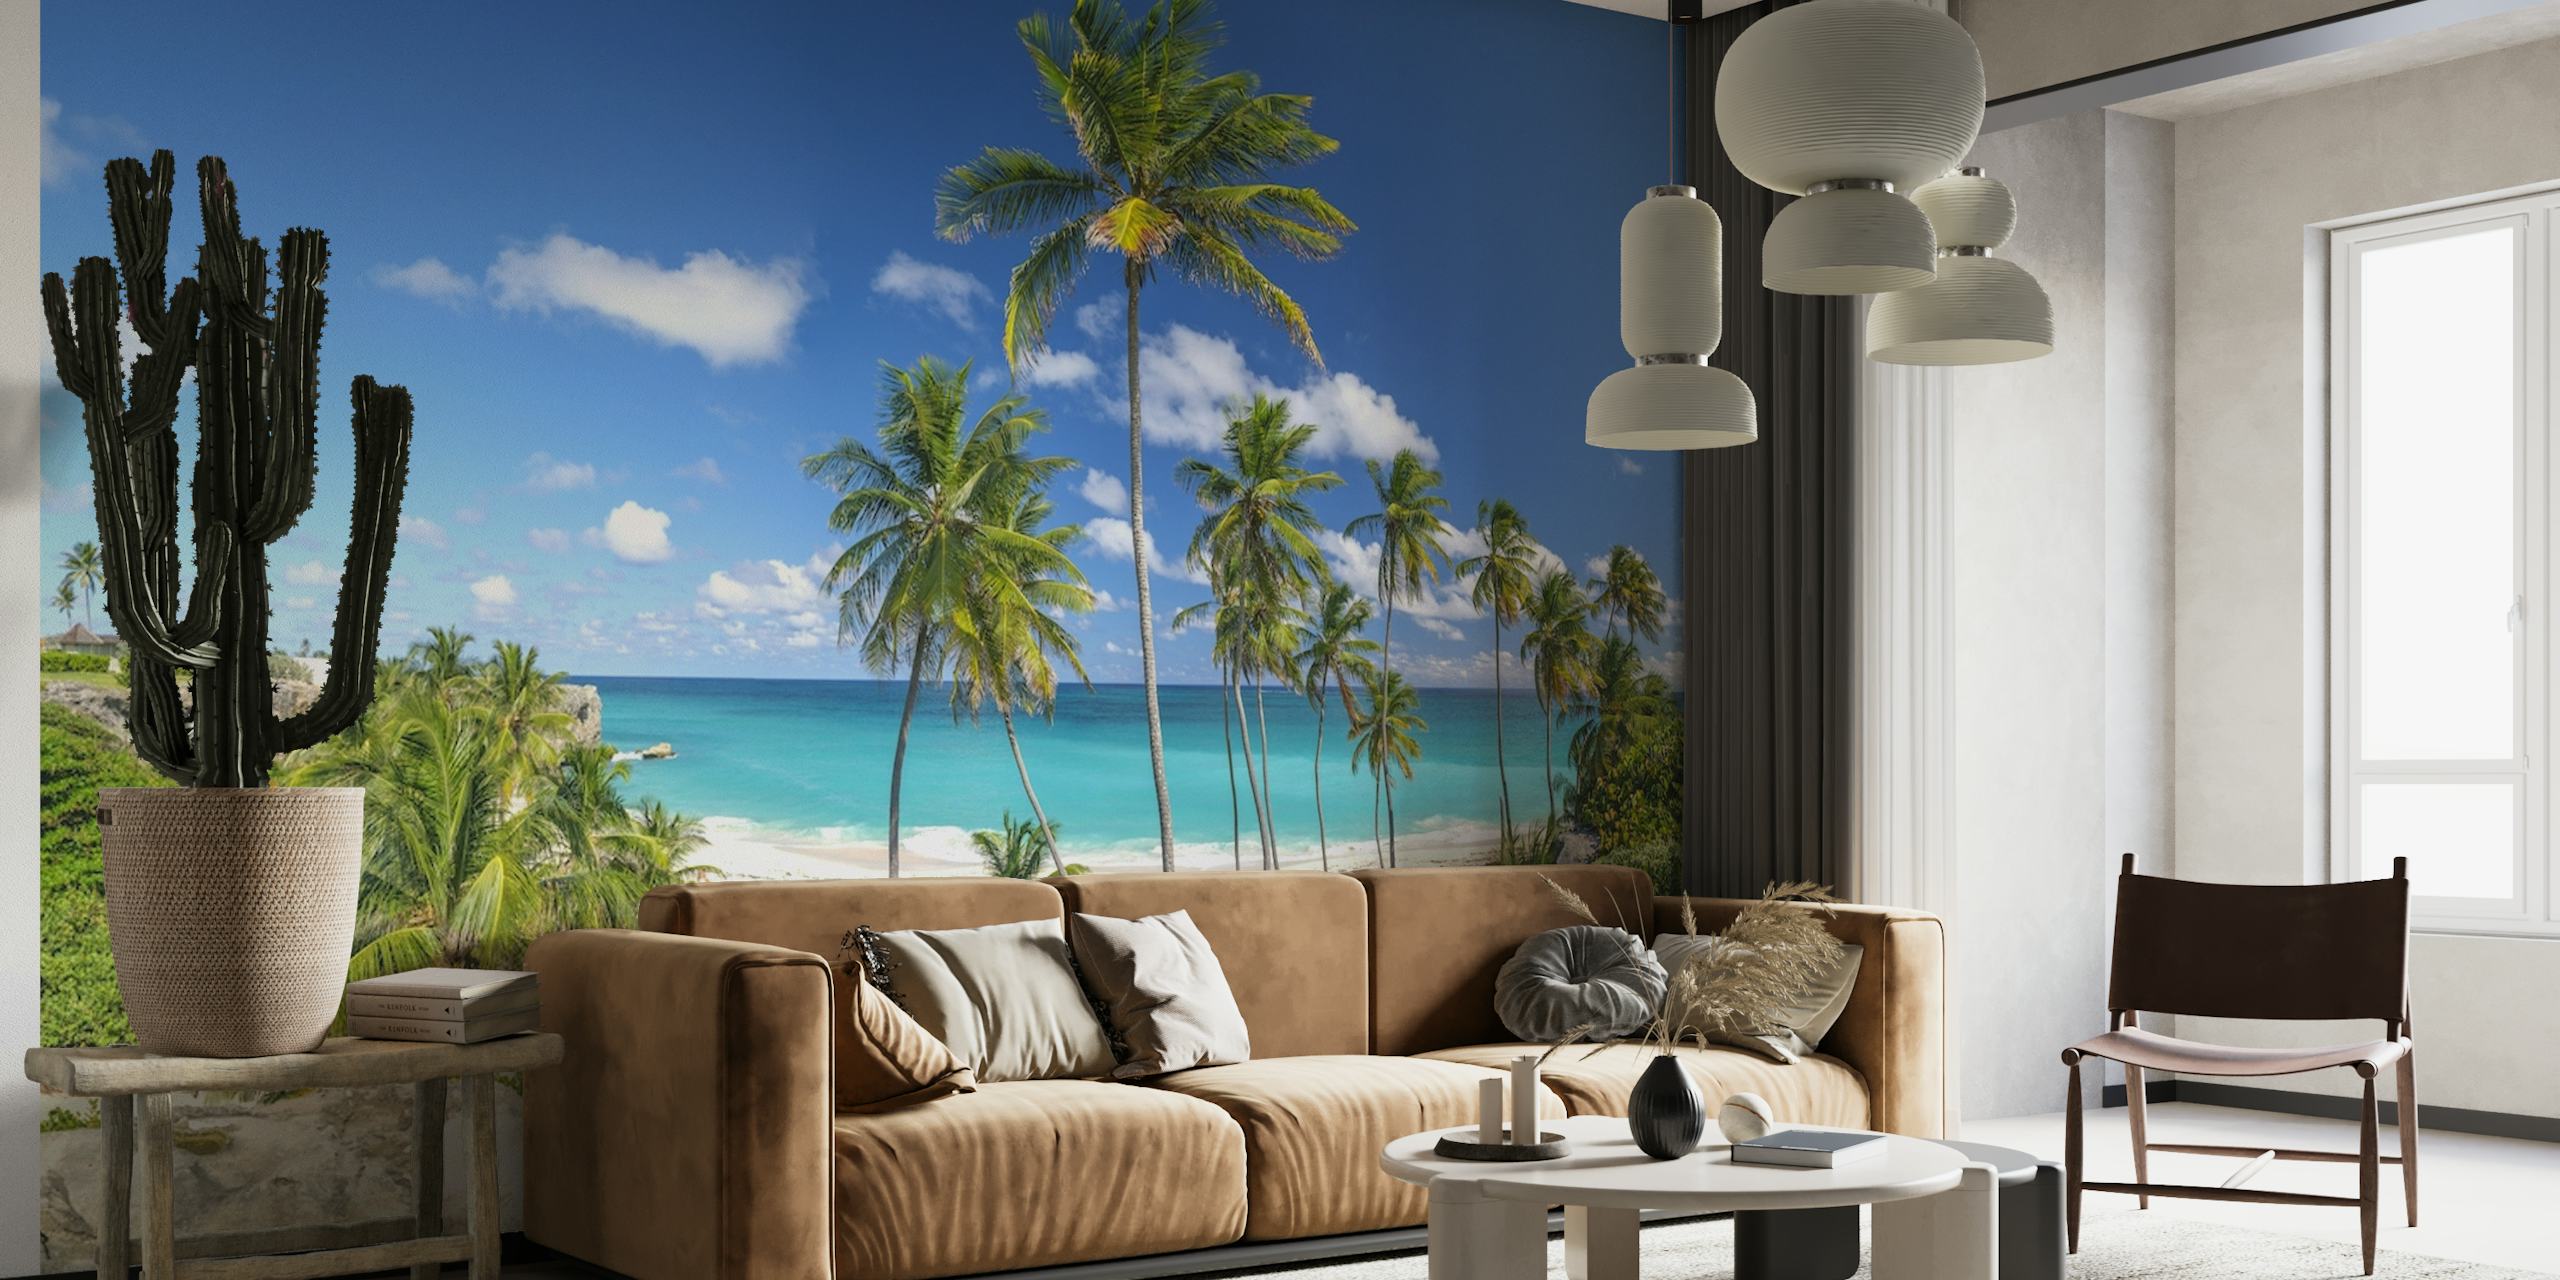 Zidni mural na tropskoj plaži s palmama i čistim plavim morem